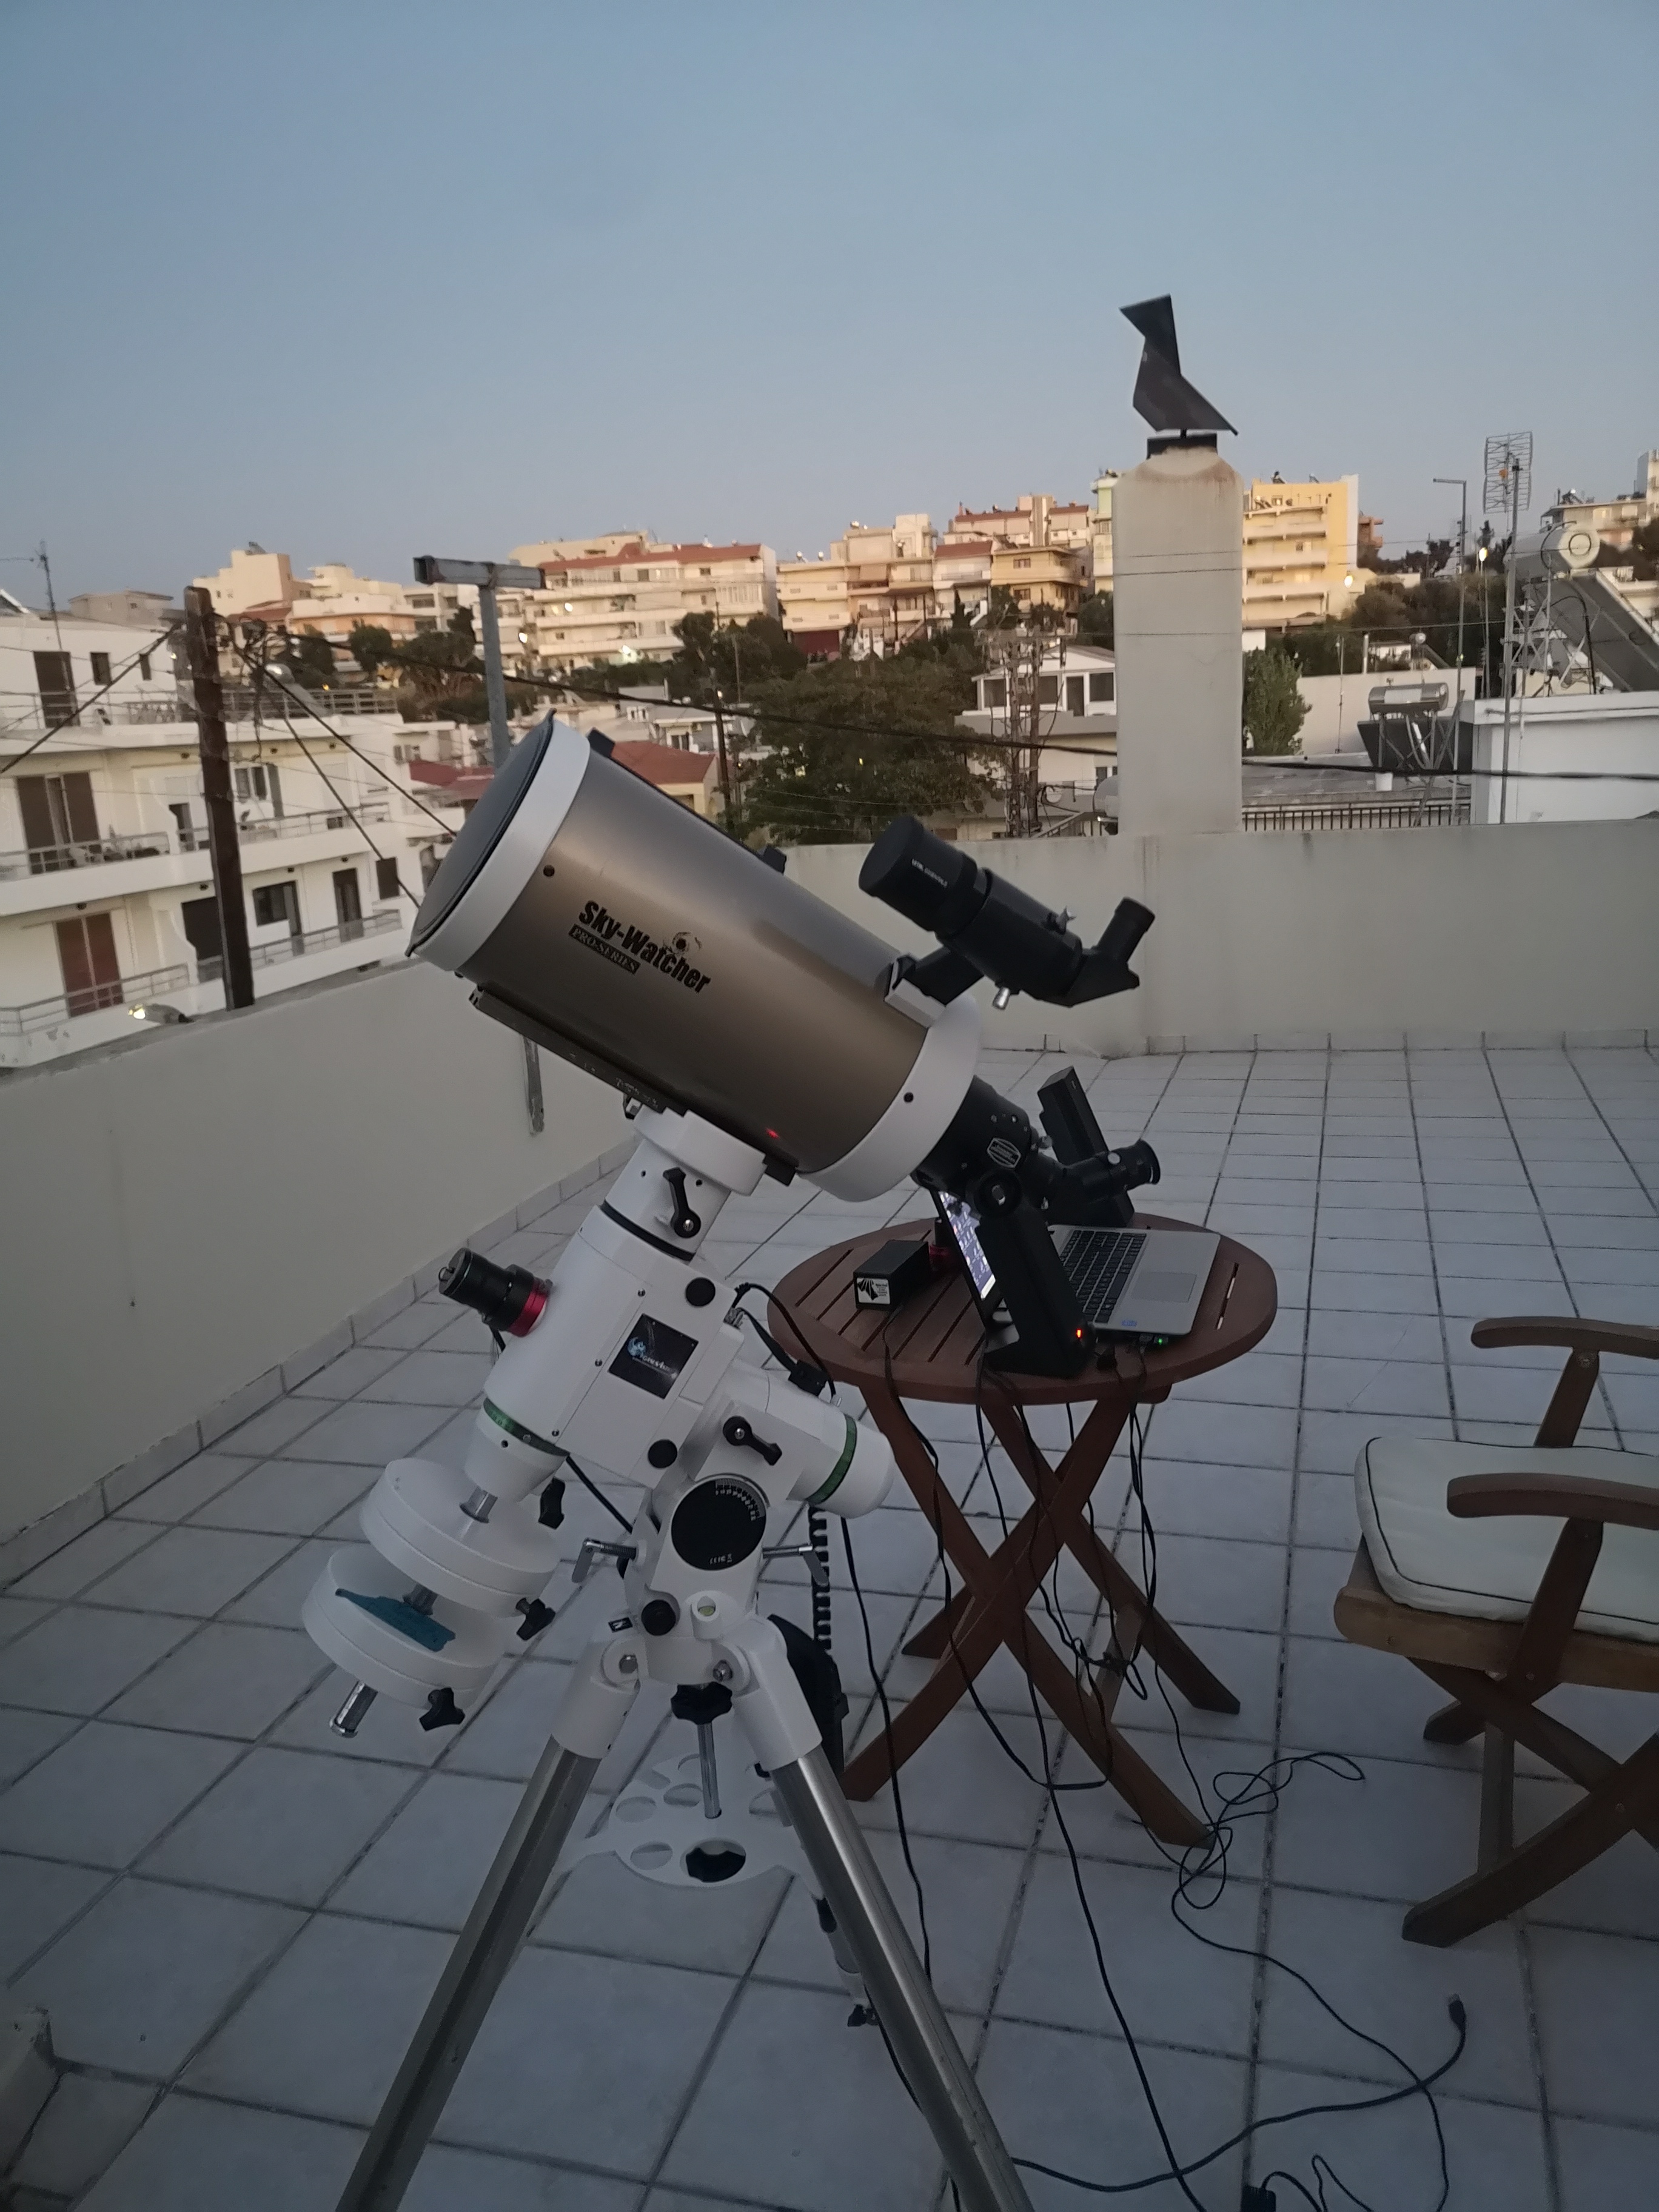 Αγορά νέου τηλεσκόπιου - Σελίδα 2 - Τηλεσκόπια - AstroVox